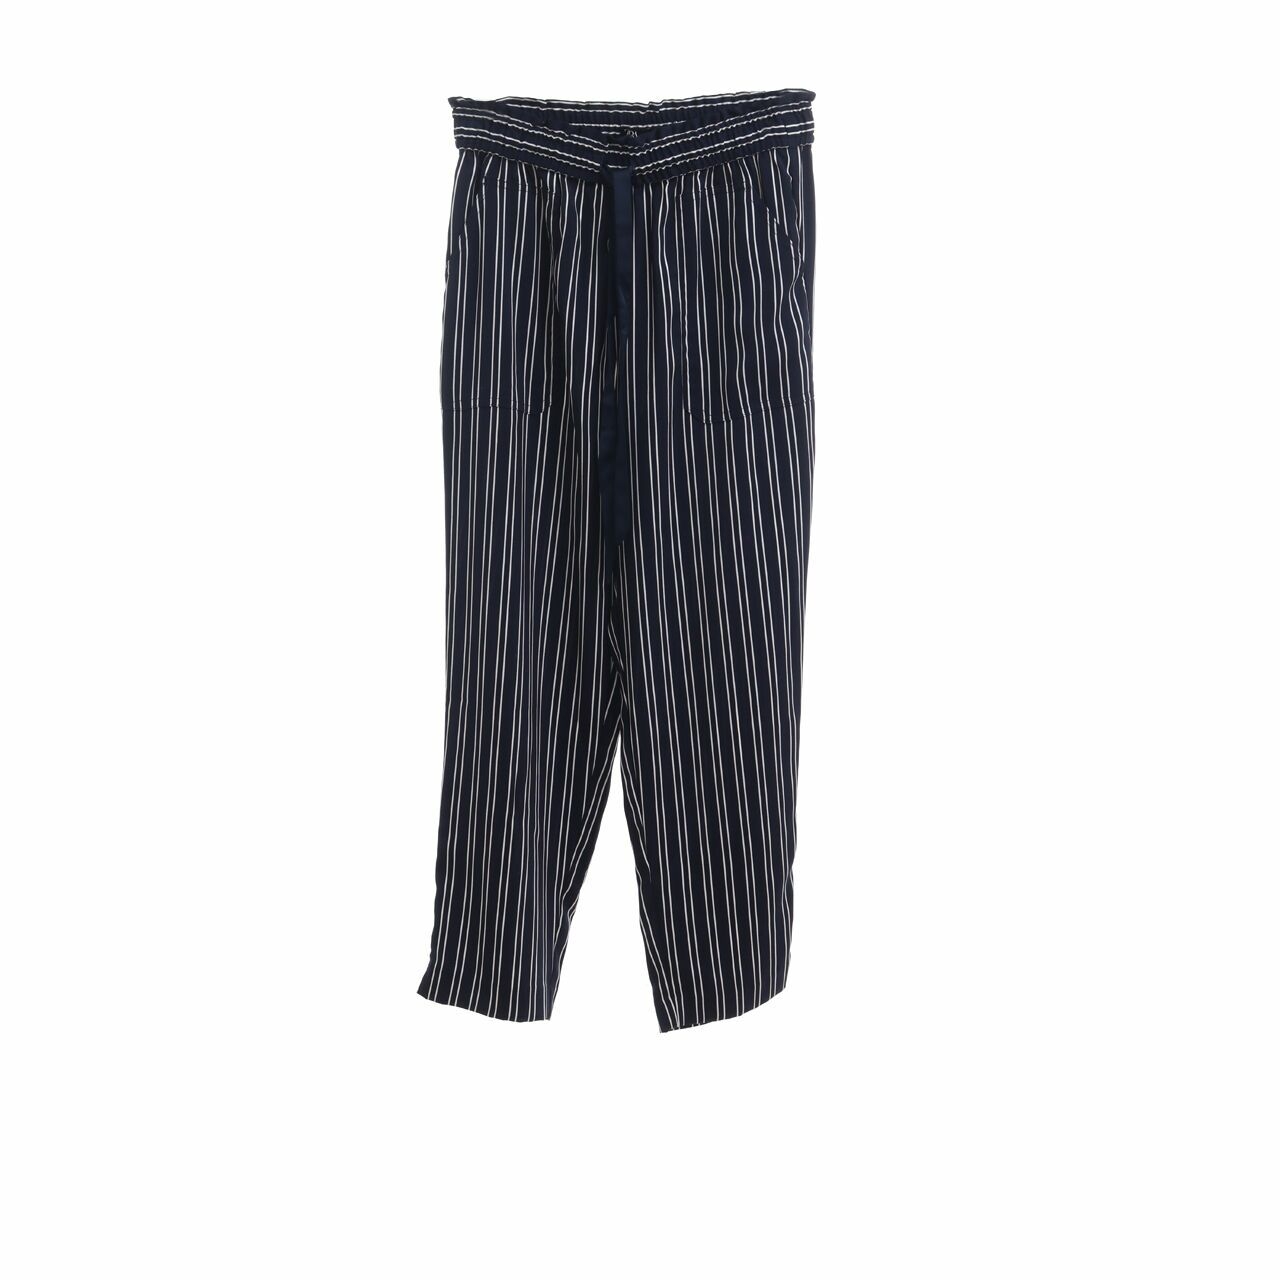 Zara Navy & White Stripes Long Pants